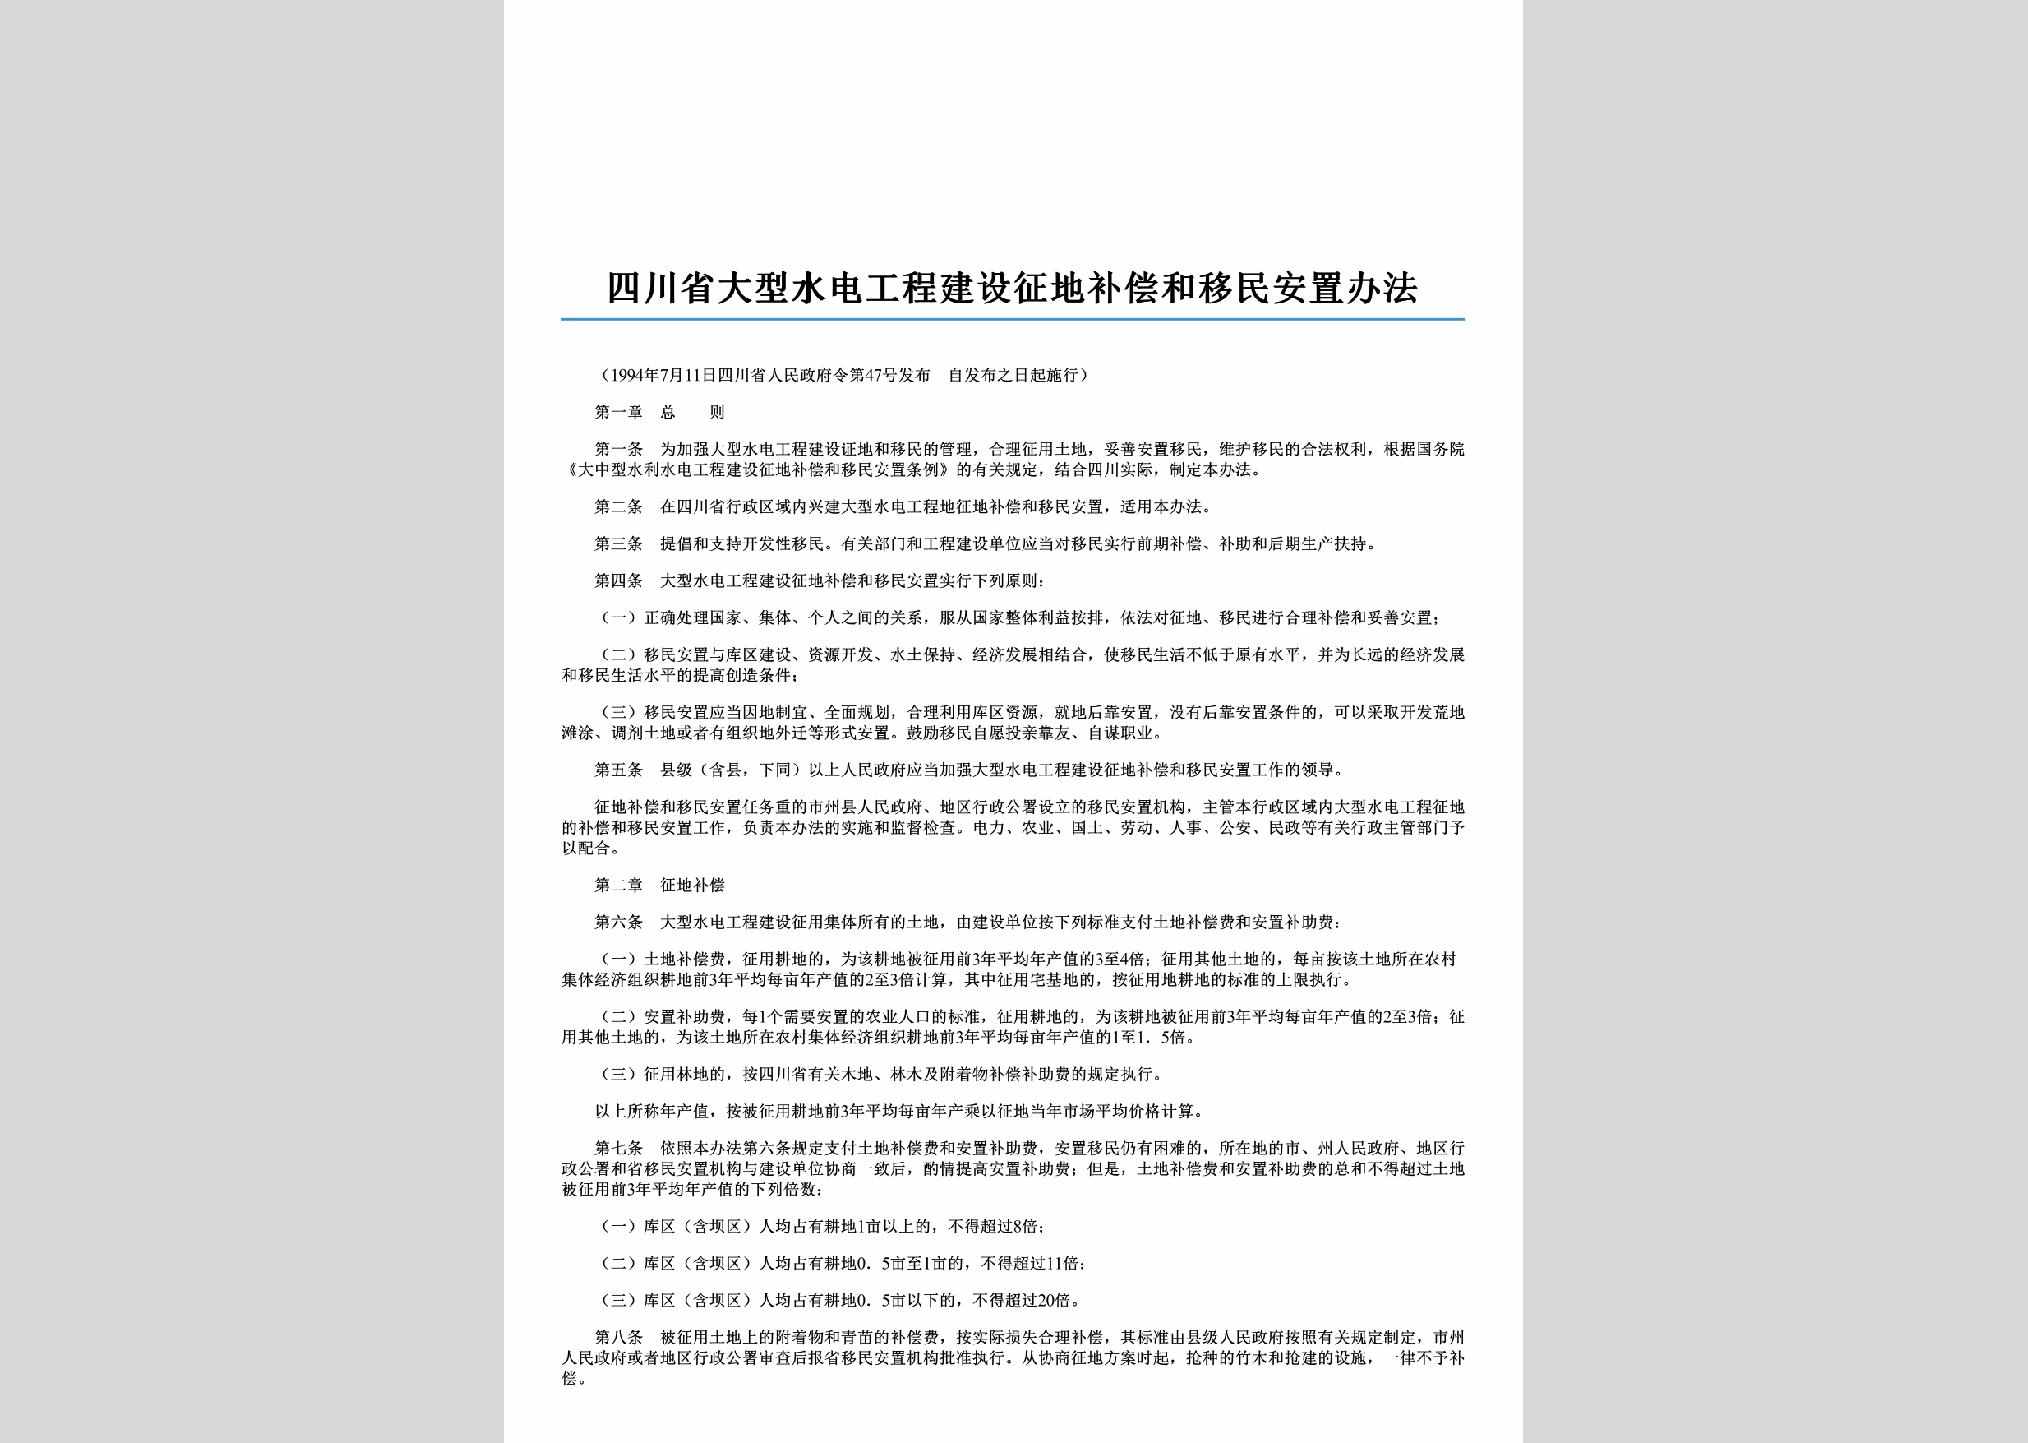 四川省人民政府令第47号：四川省大型水电工程建设征地补偿和移民安置办法